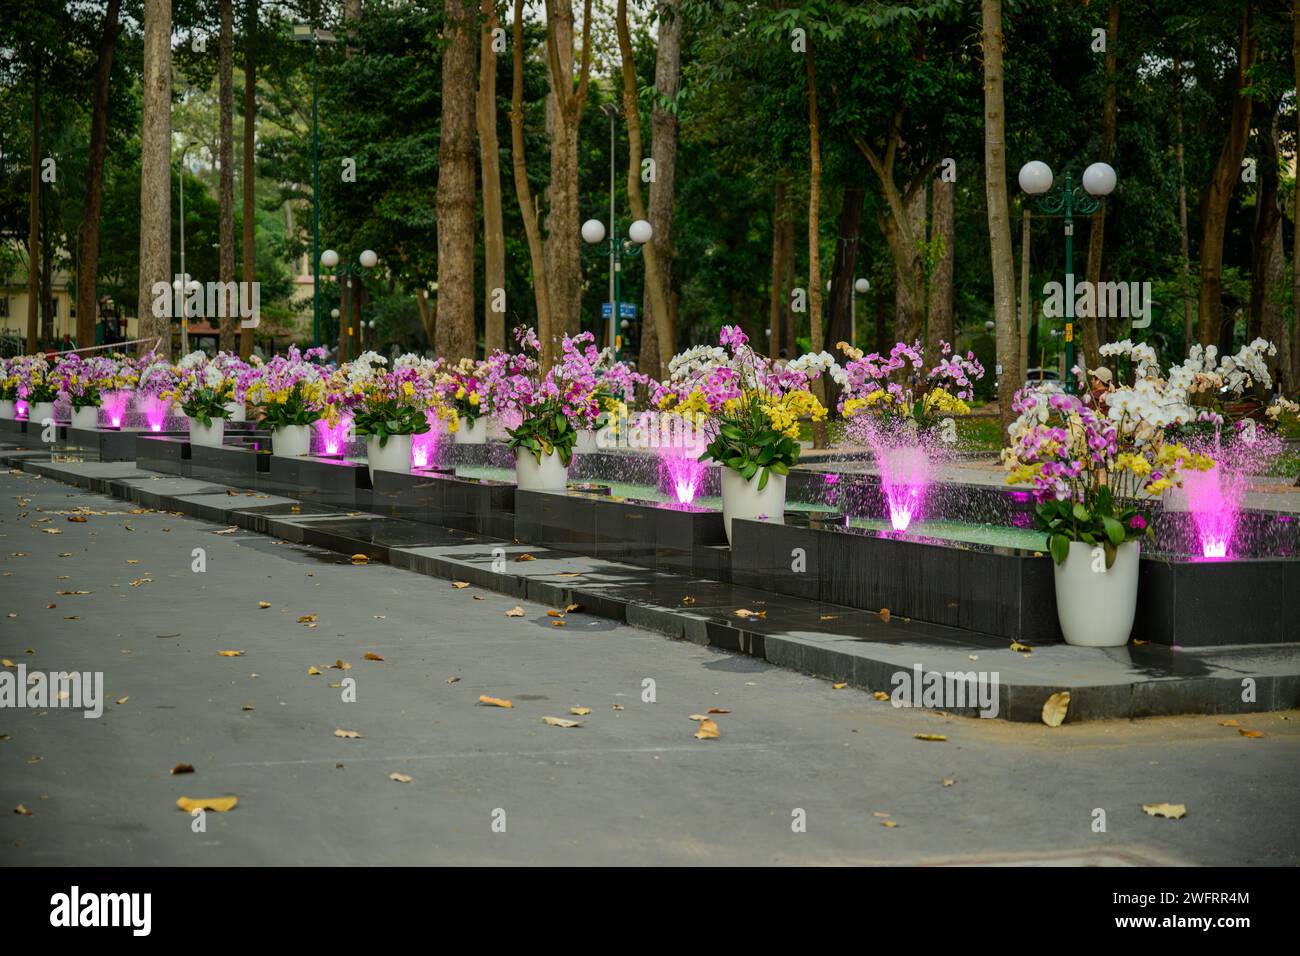 The fountains at Tao Dan Park, Ho Chi Minh City, Vietnam Stock Photo